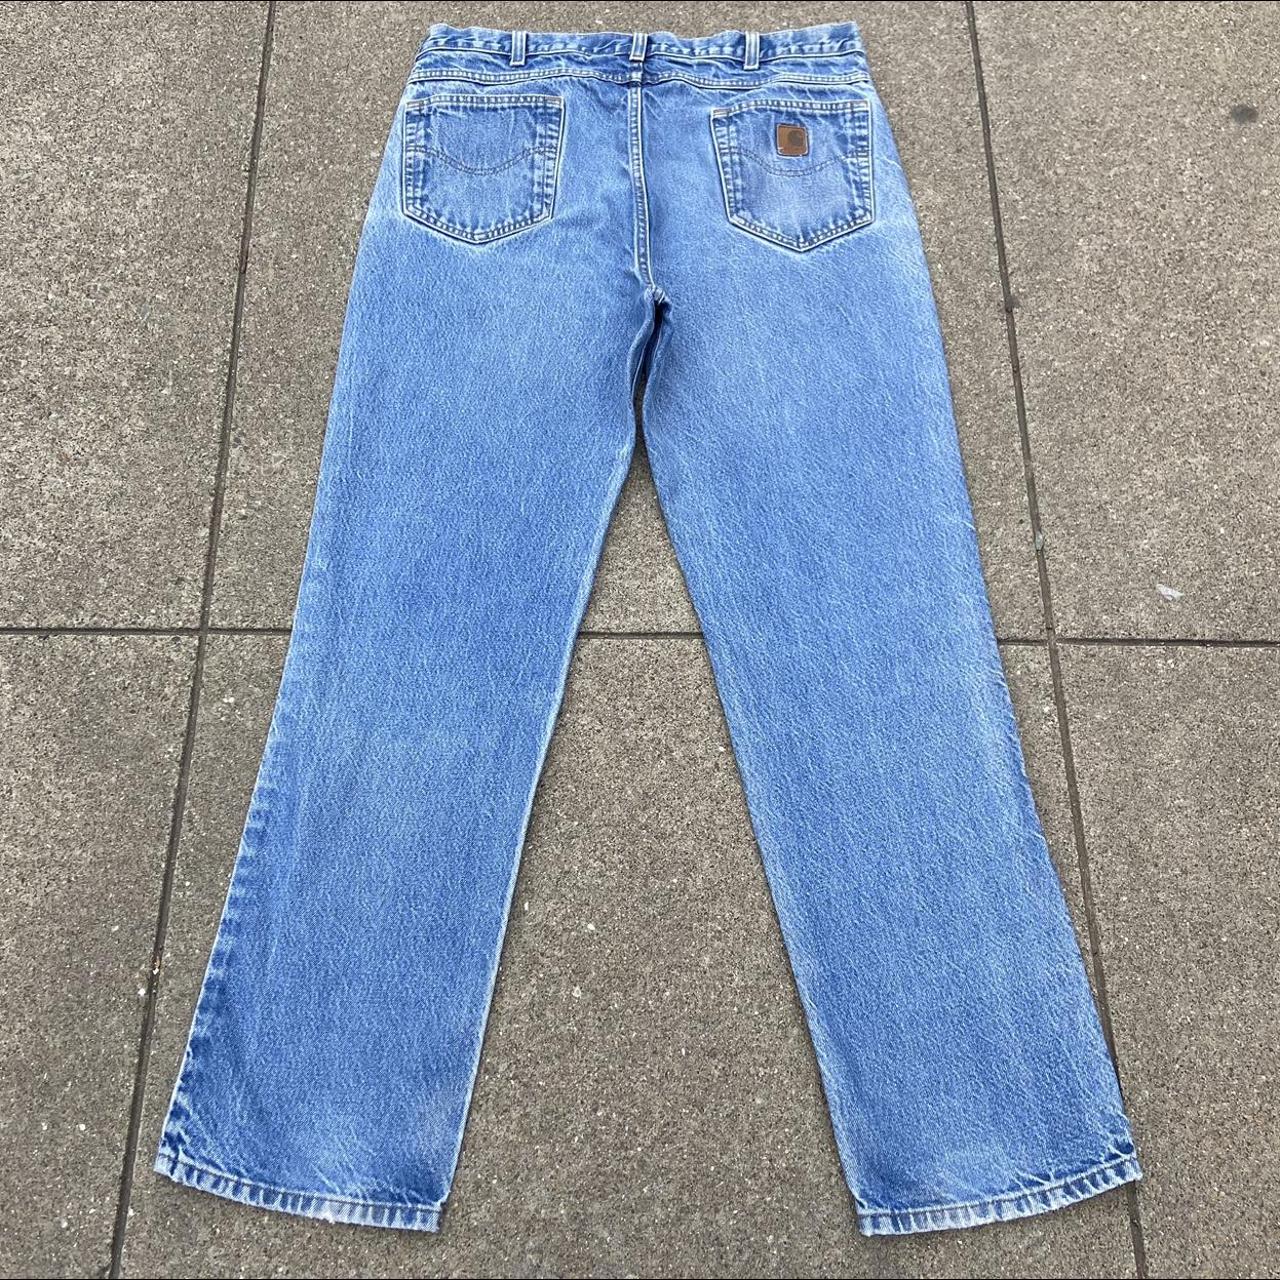 Vintage blue Carhartt work jeans size (measured) 38... - Depop